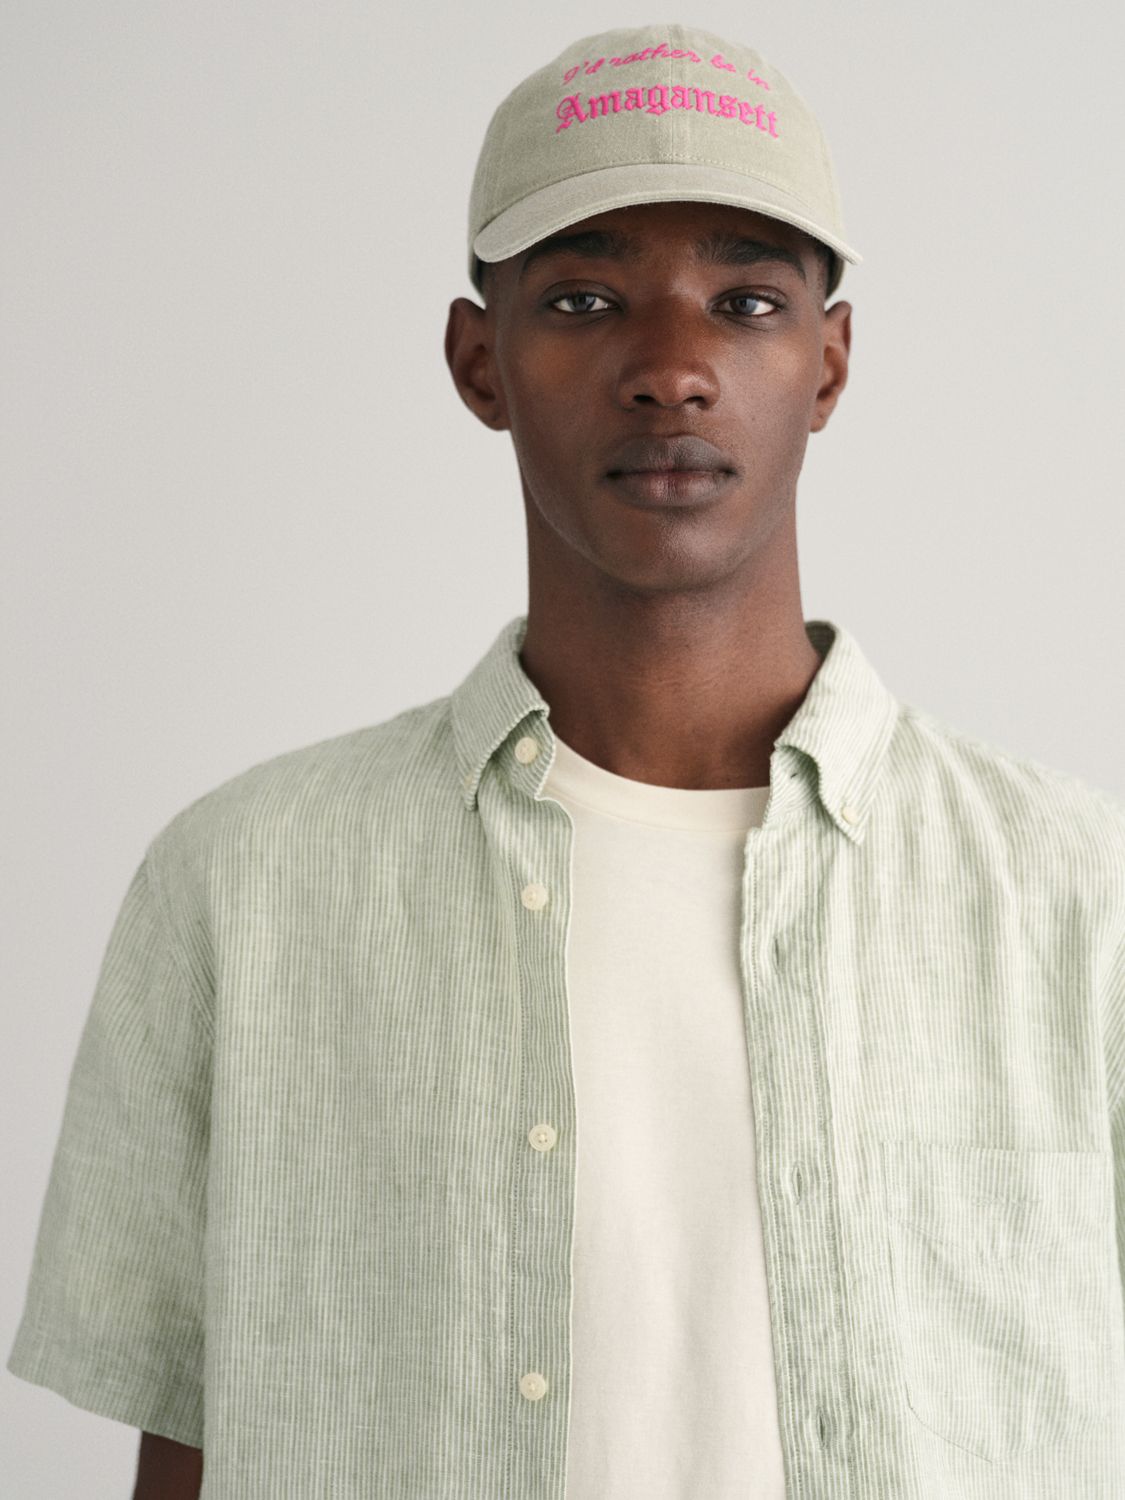 GANT Linen Short Sleeve Shirt, Green, XL